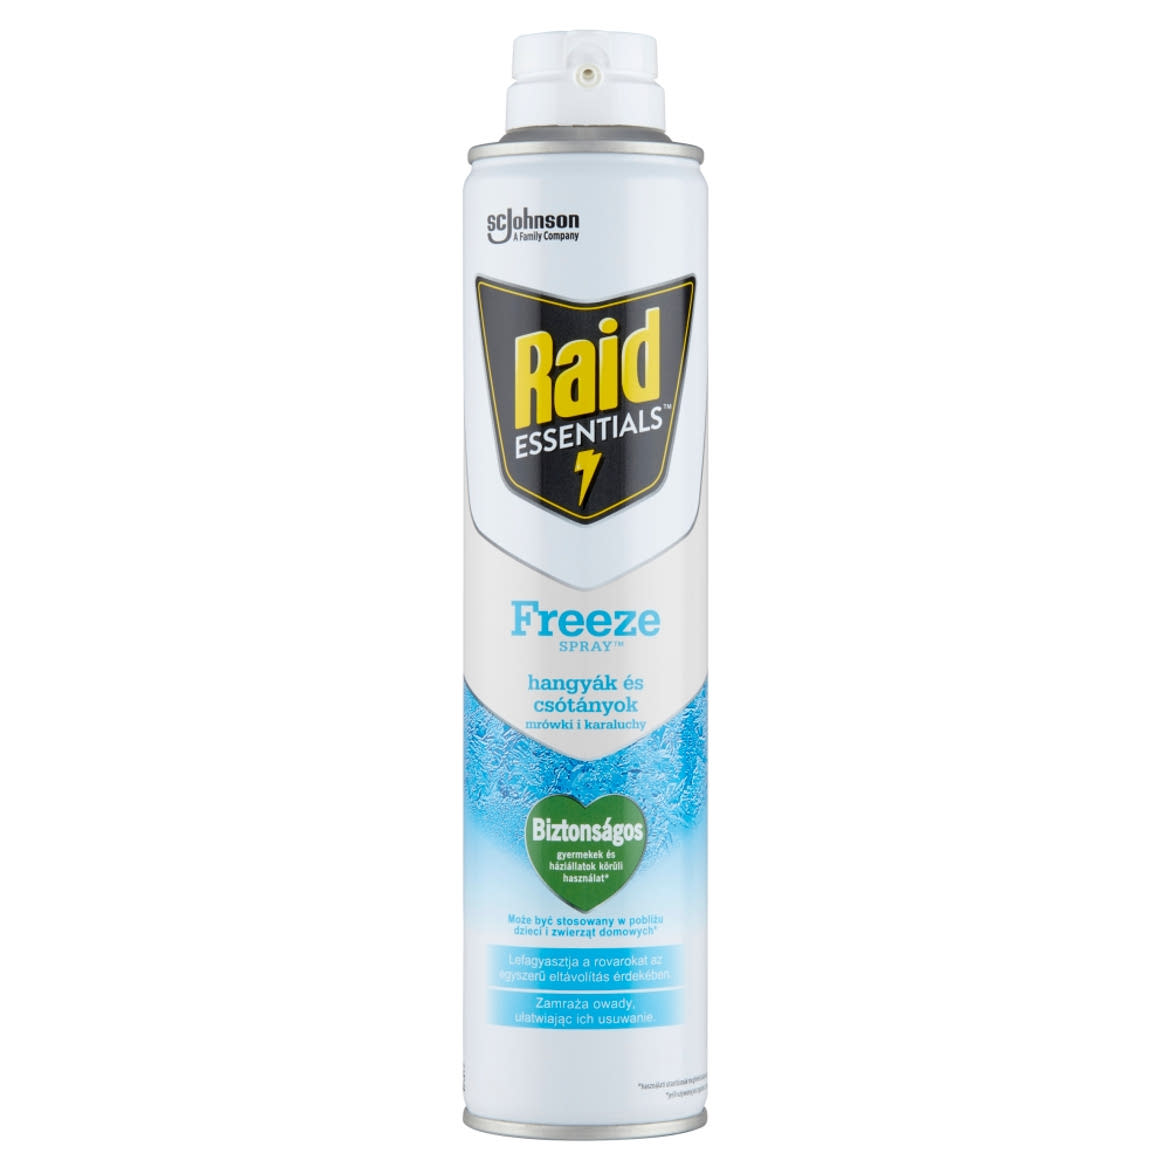 Raid Essentials rovarfagyasztó aeroszol